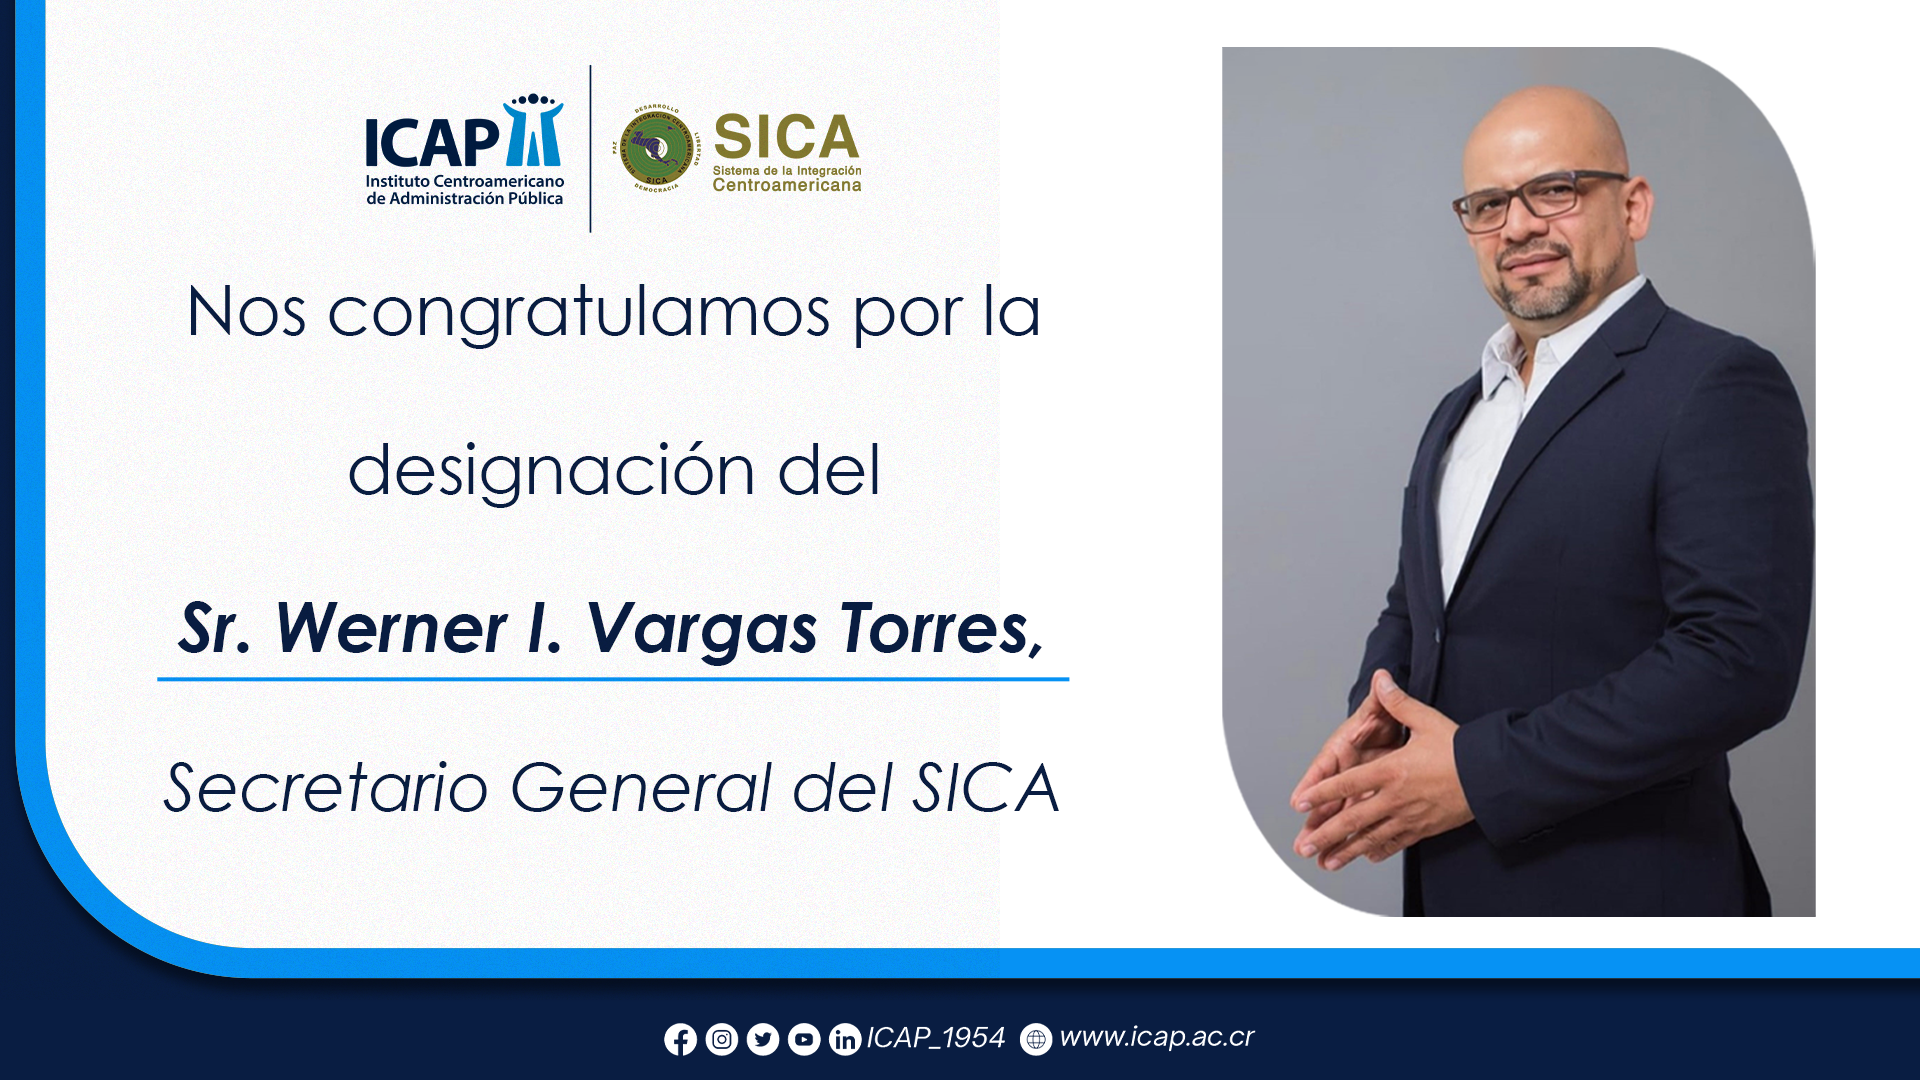 ICAP se congratula por la designación del Sr. Werner I. Vargas Torres, Secretario General del SICA